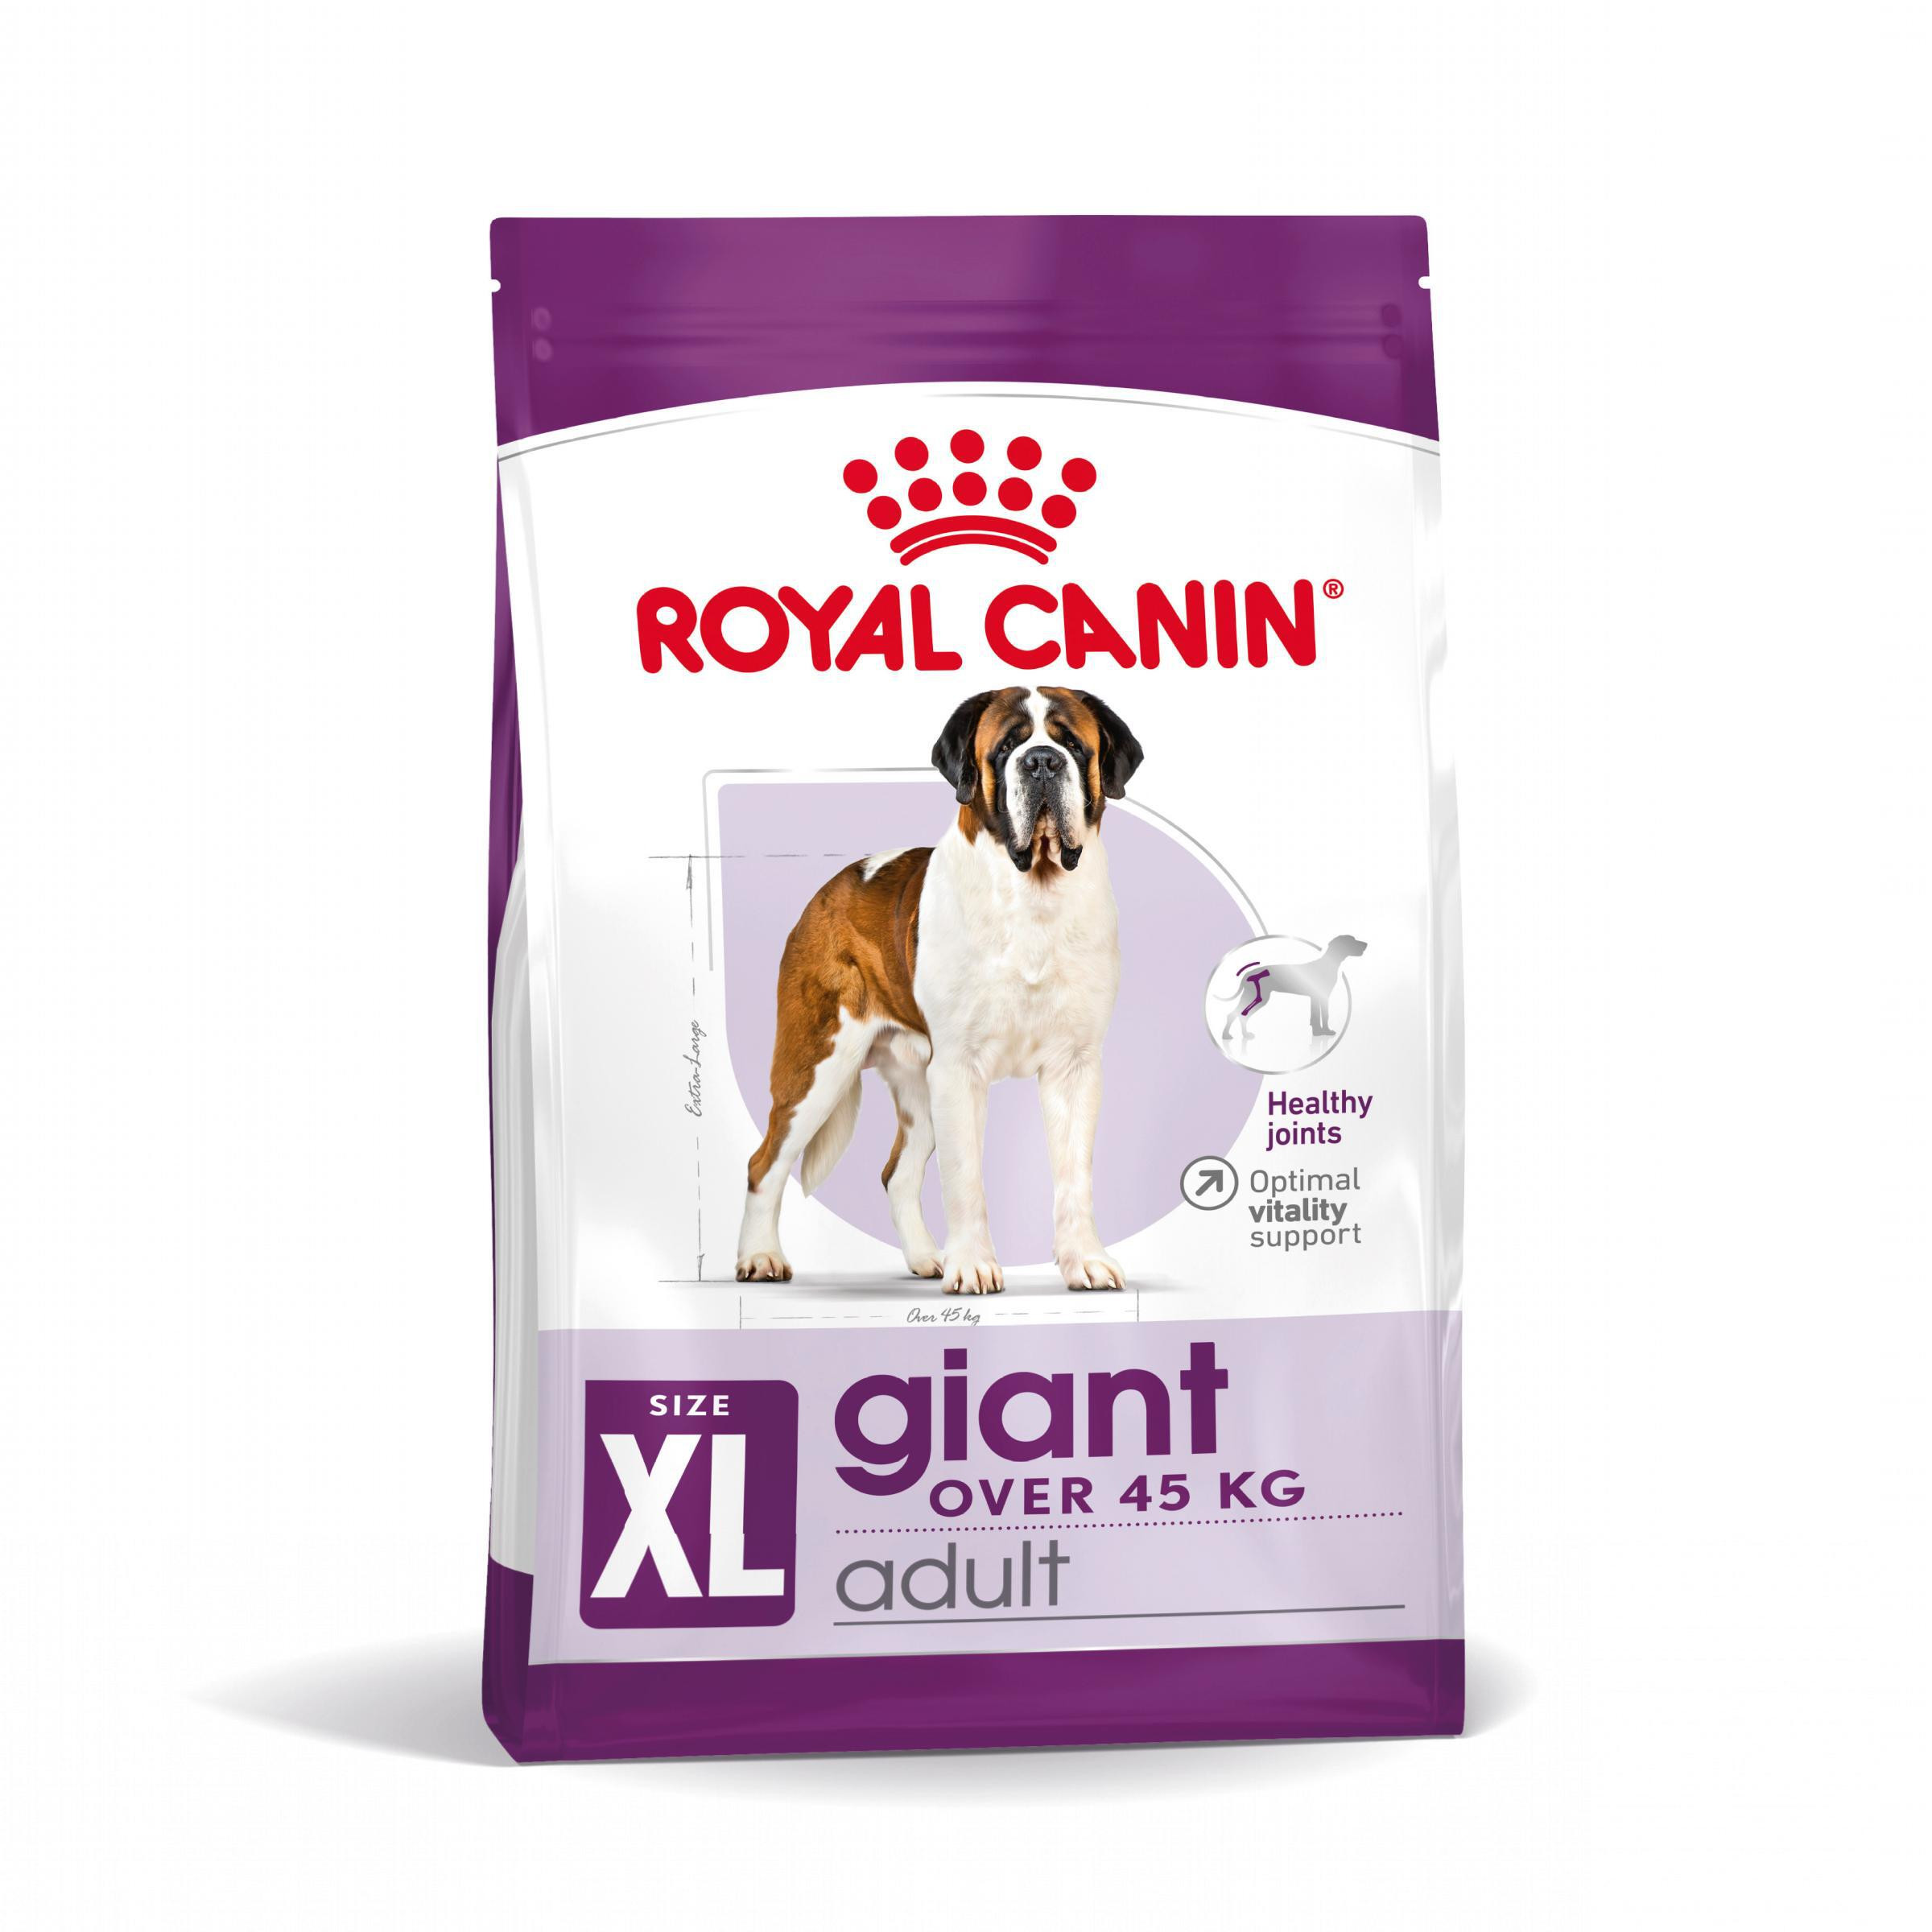 Bild von 15 kg Royal Canin Giant Adult Hundefutter